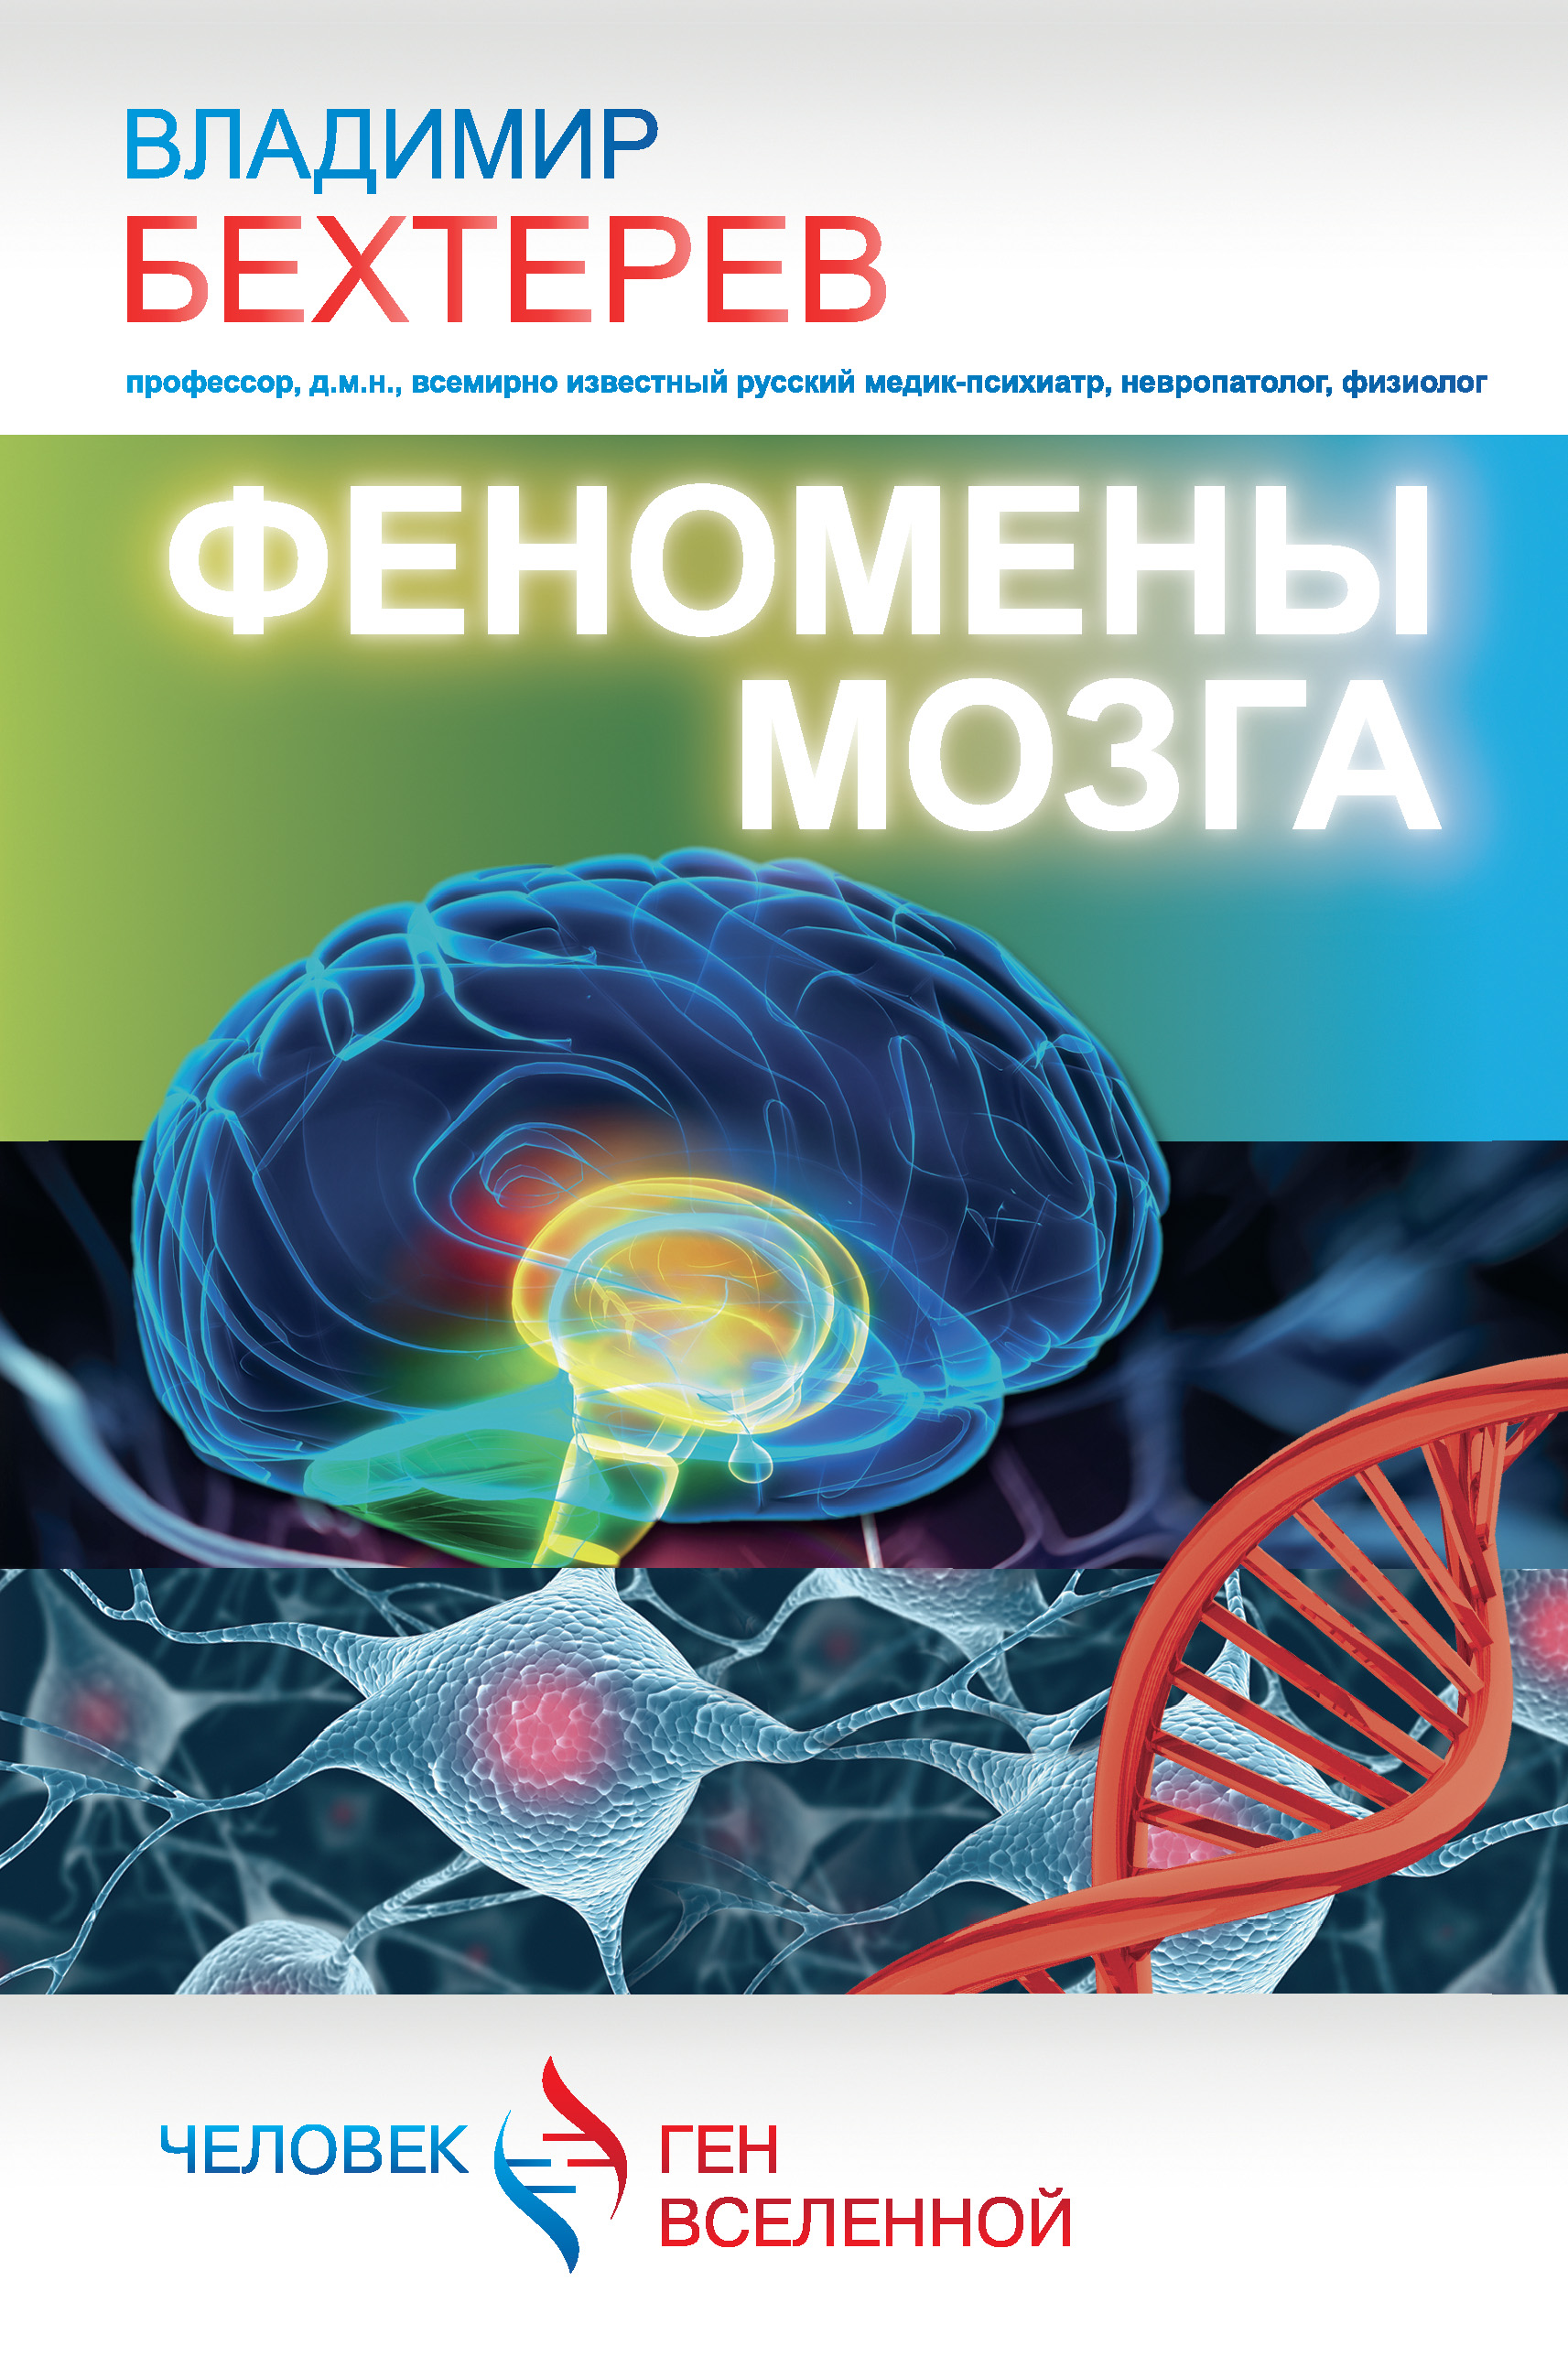 Книга Феномены мозга из серии Человек – ген Вселенной, созданная Владимир Бехтерев, может относится к жанру Биология, Медицина. Стоимость книги Феномены мозга  с идентификатором 8010638 составляет 229.00 руб.